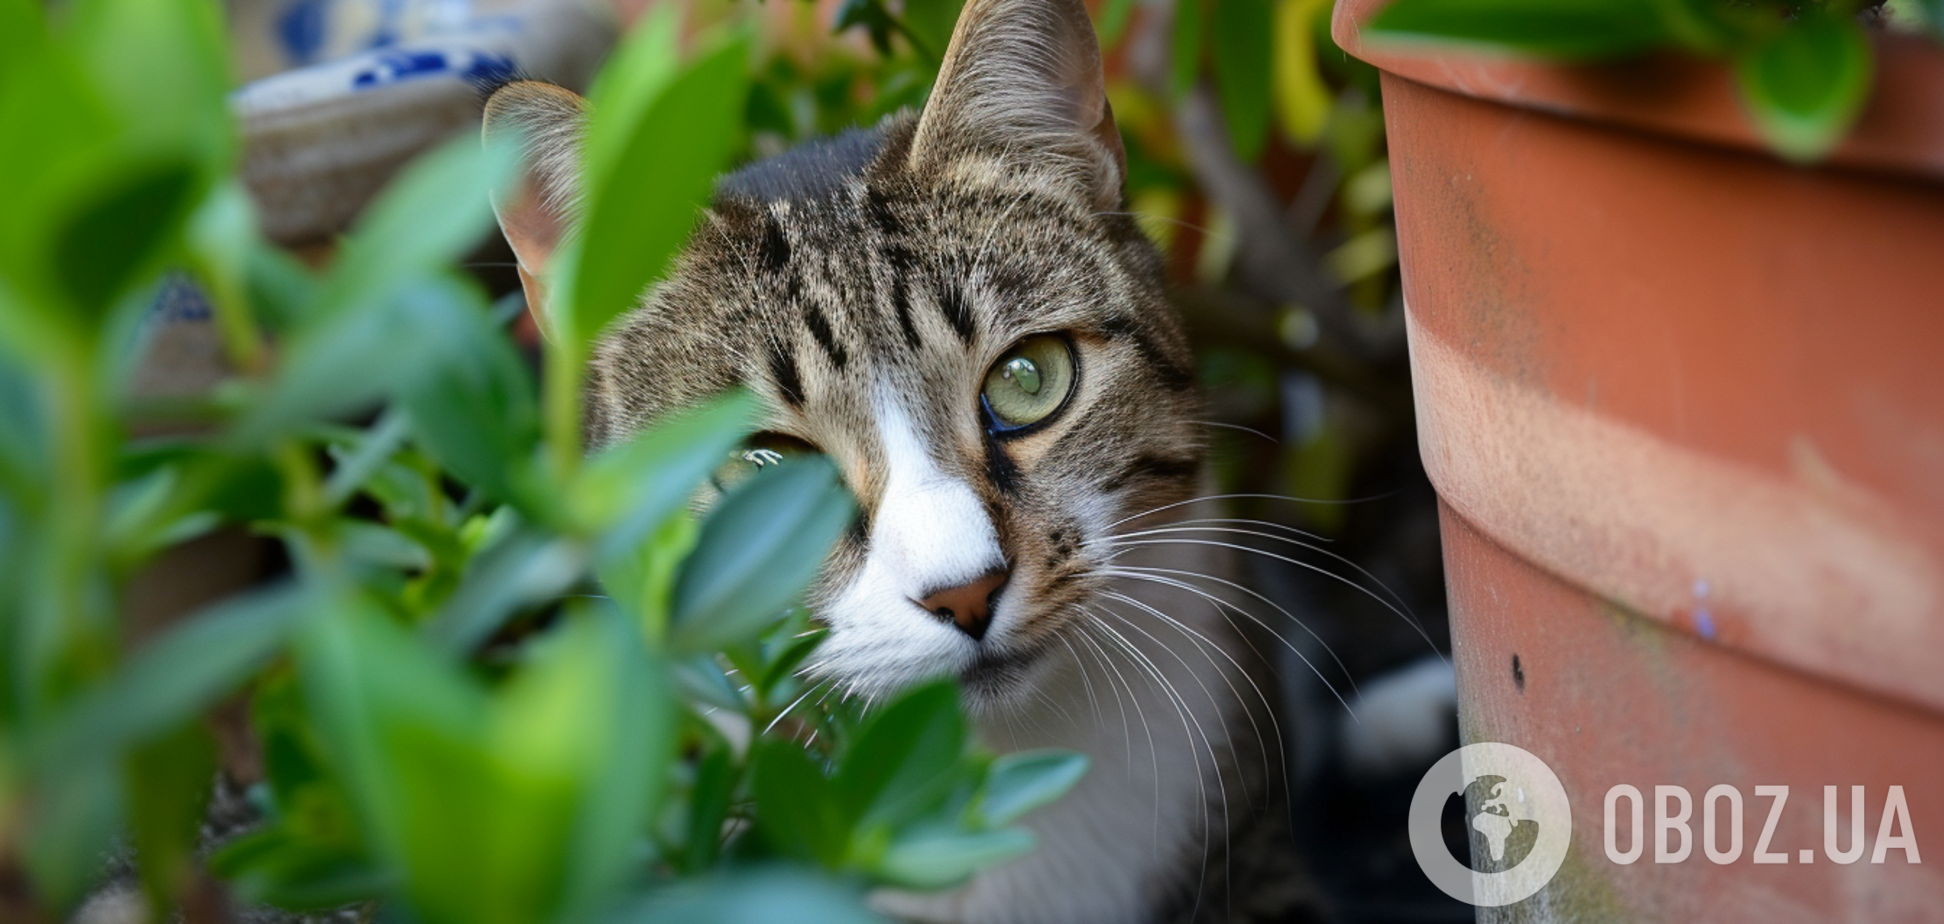 Домашний спрей отвадит кошек от уничтожения вазонов с цветами: как приготовить